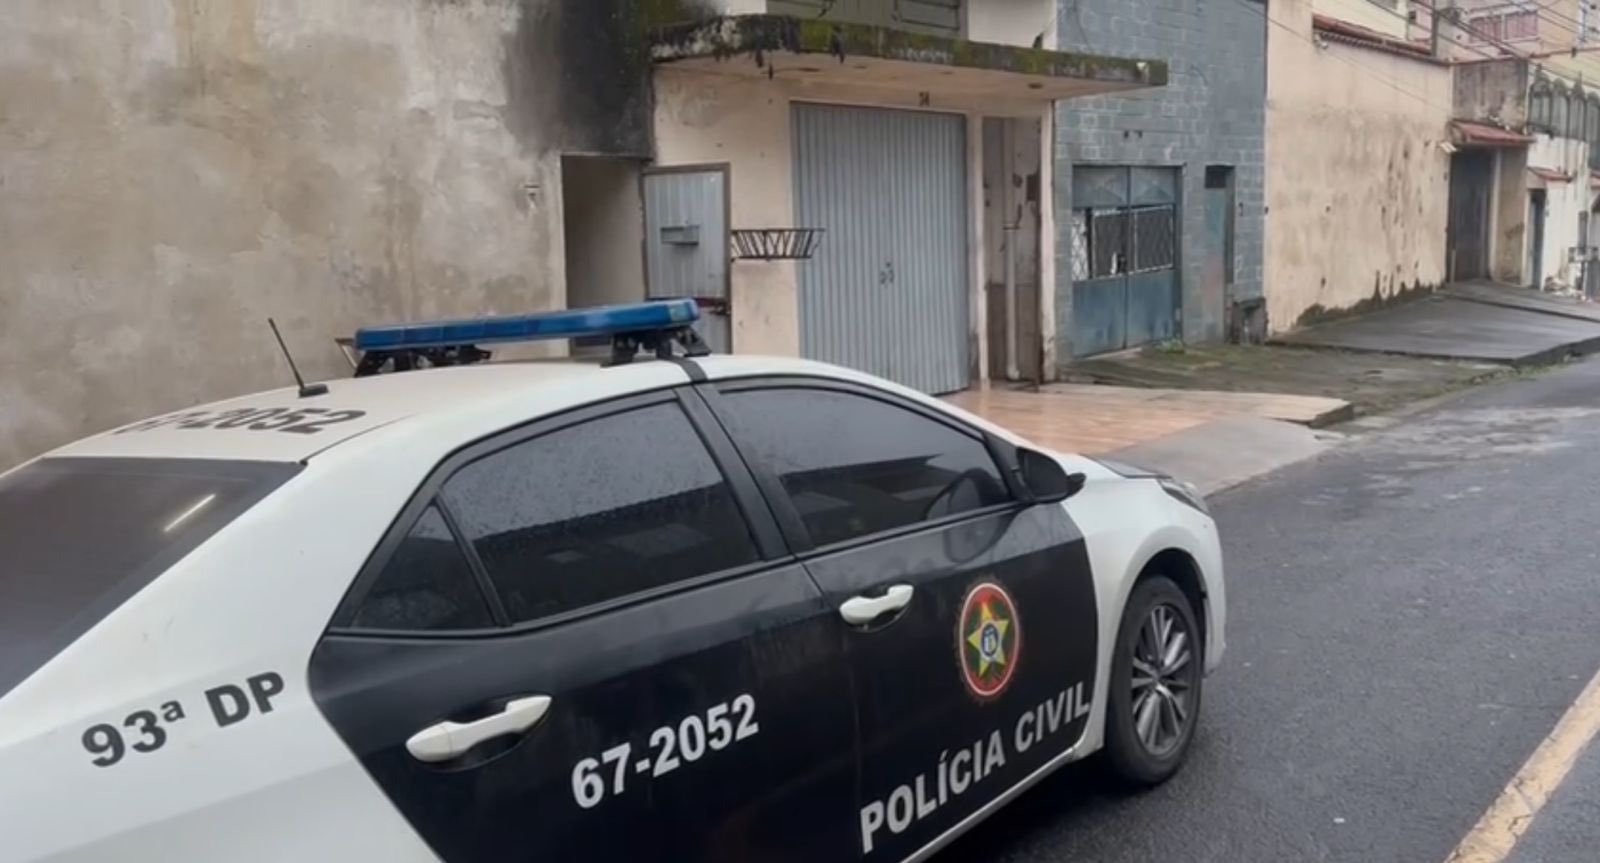 Ação da Polícia Civil tem apoio da Secretaria Municipal de Ordem Pública (Semop) e da Guarda Municipal de Volta Redonda